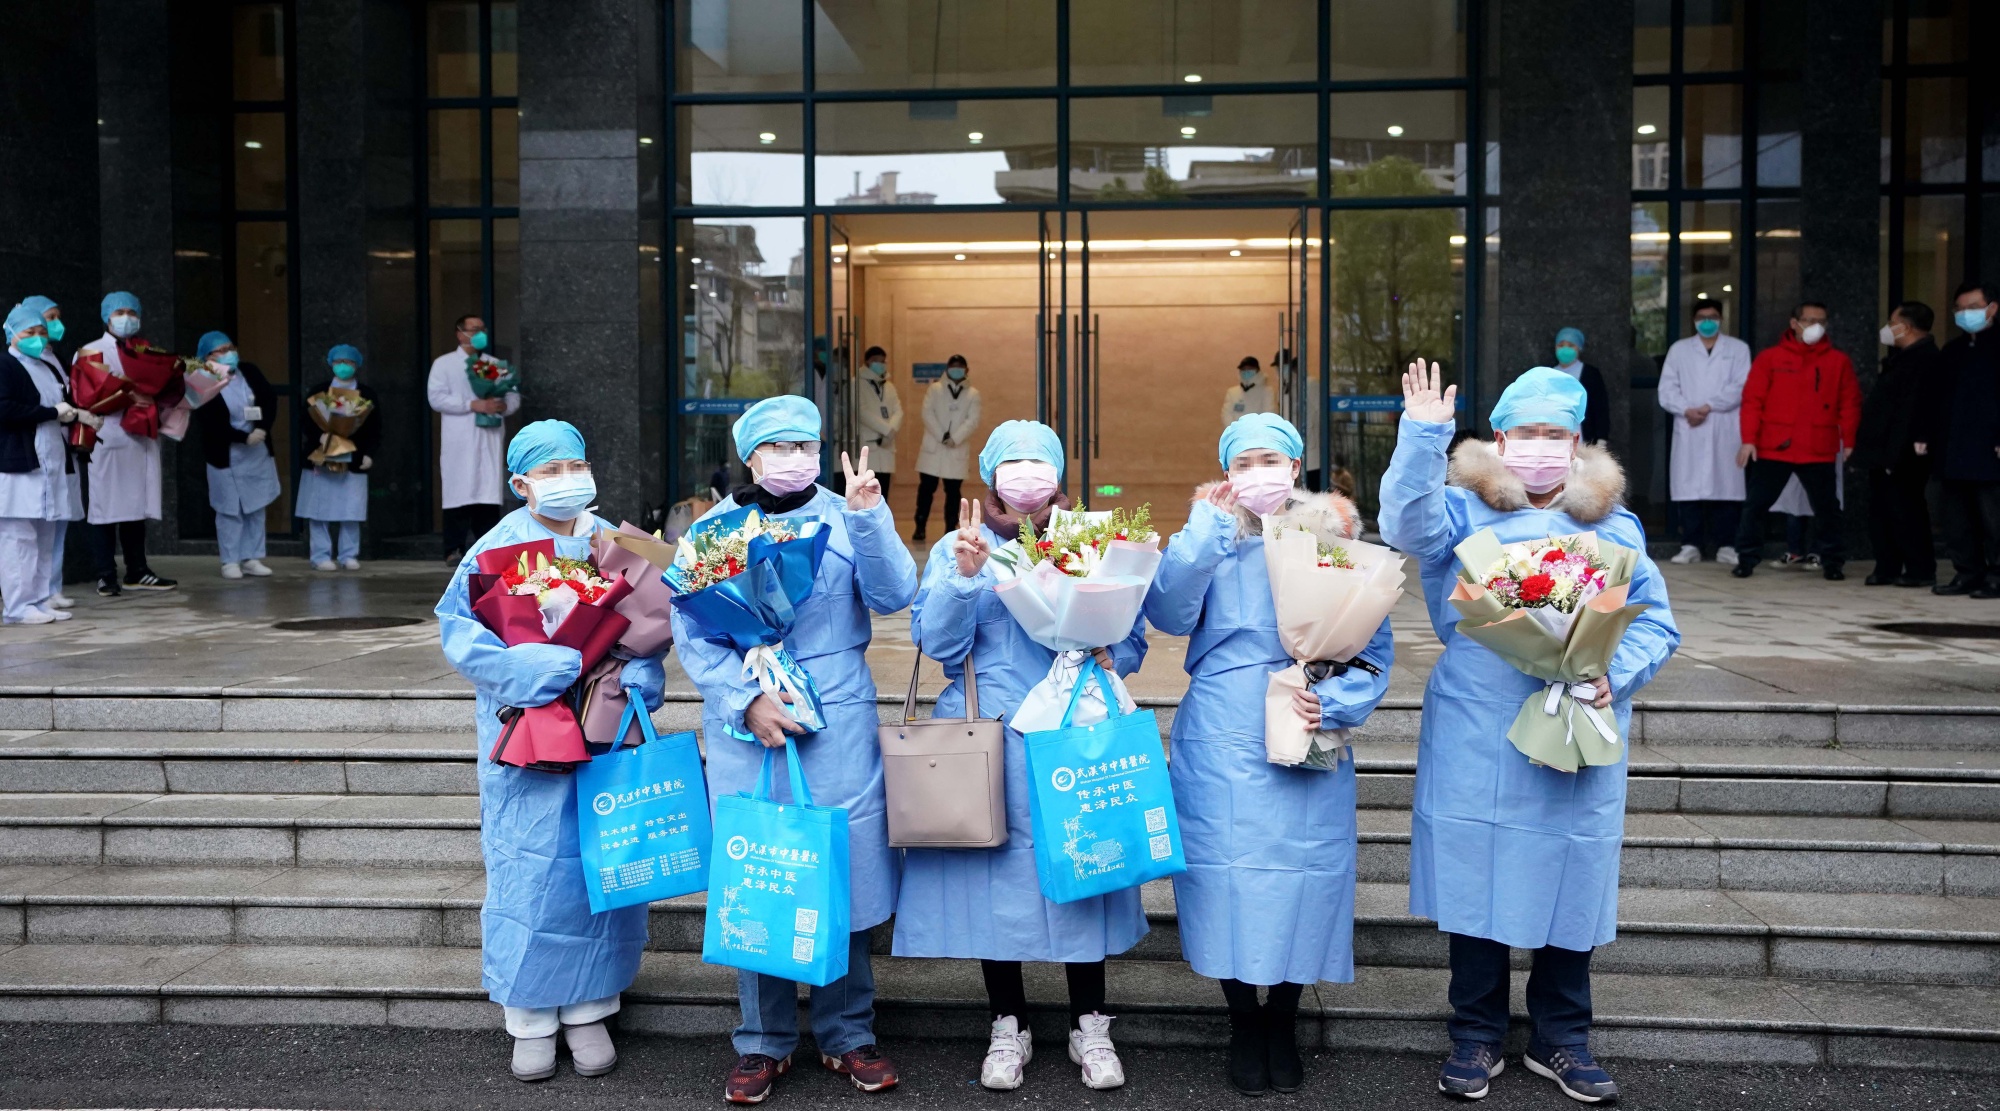   Còn Ủy ban Y tế Quốc gia Trung Quốc khuyến cáo những bệnh nhân đã hội phục vẫn phải cách ly 14 ngày, đeo khẩu trang và không nên ra ngoài.  